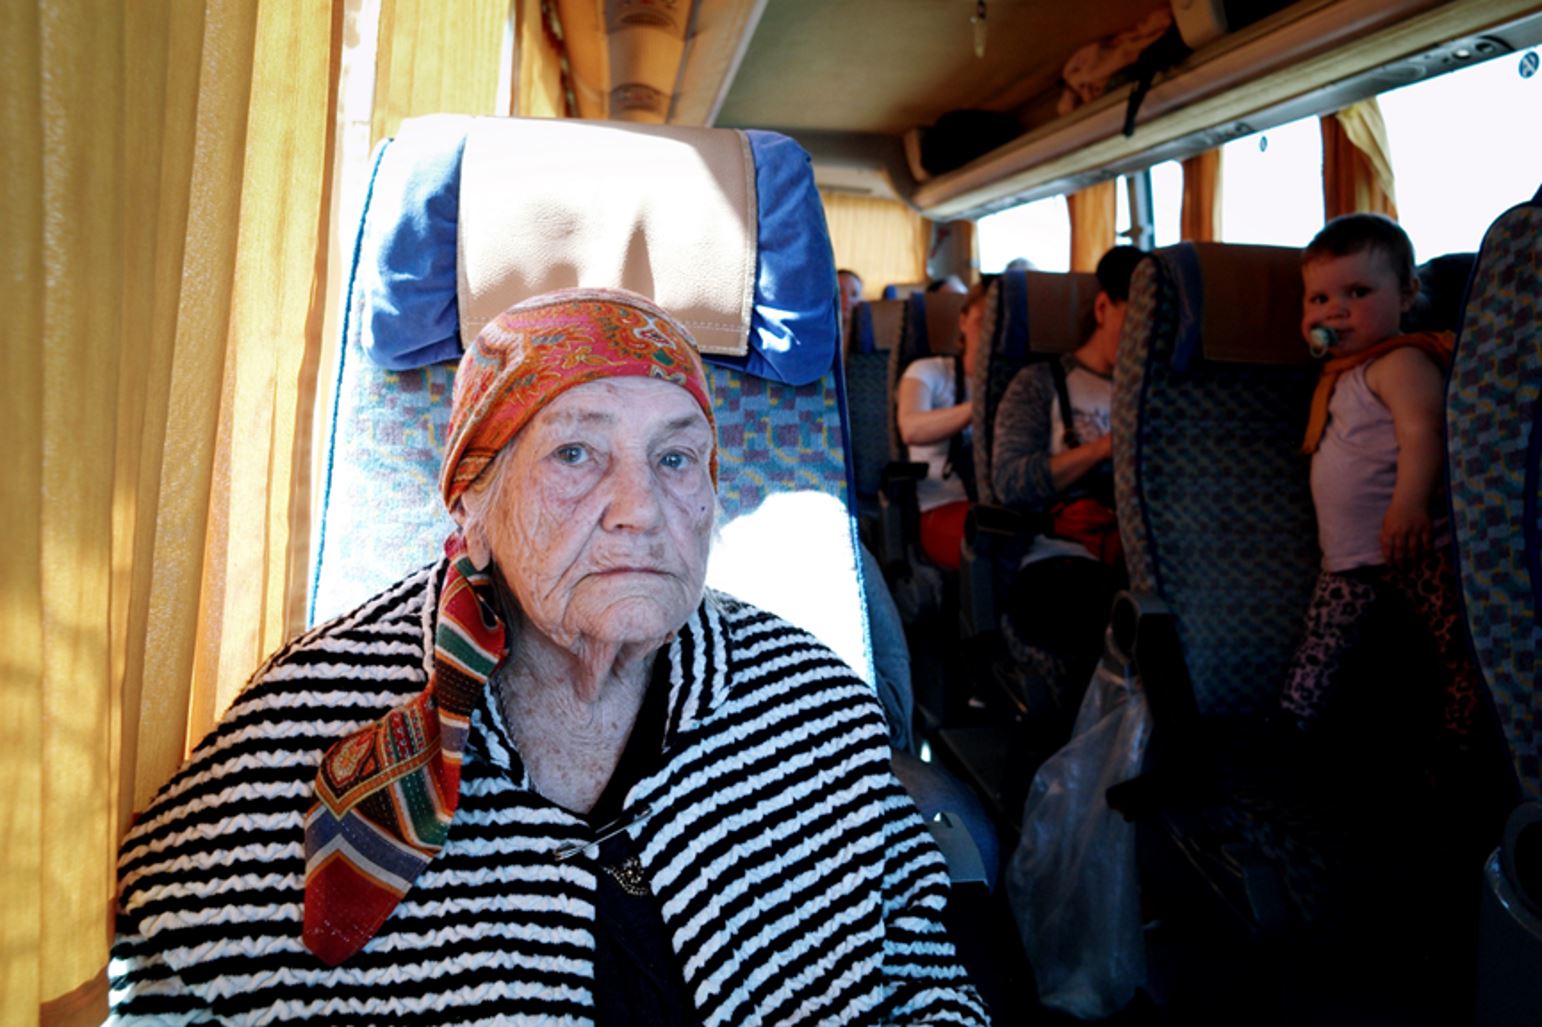 攝於羅馬尼亞與烏克蘭邊境，九十五歲的奶奶剛搭上巴士準備前往羅馬尼亞首都布加列斯特。圖片：張雍